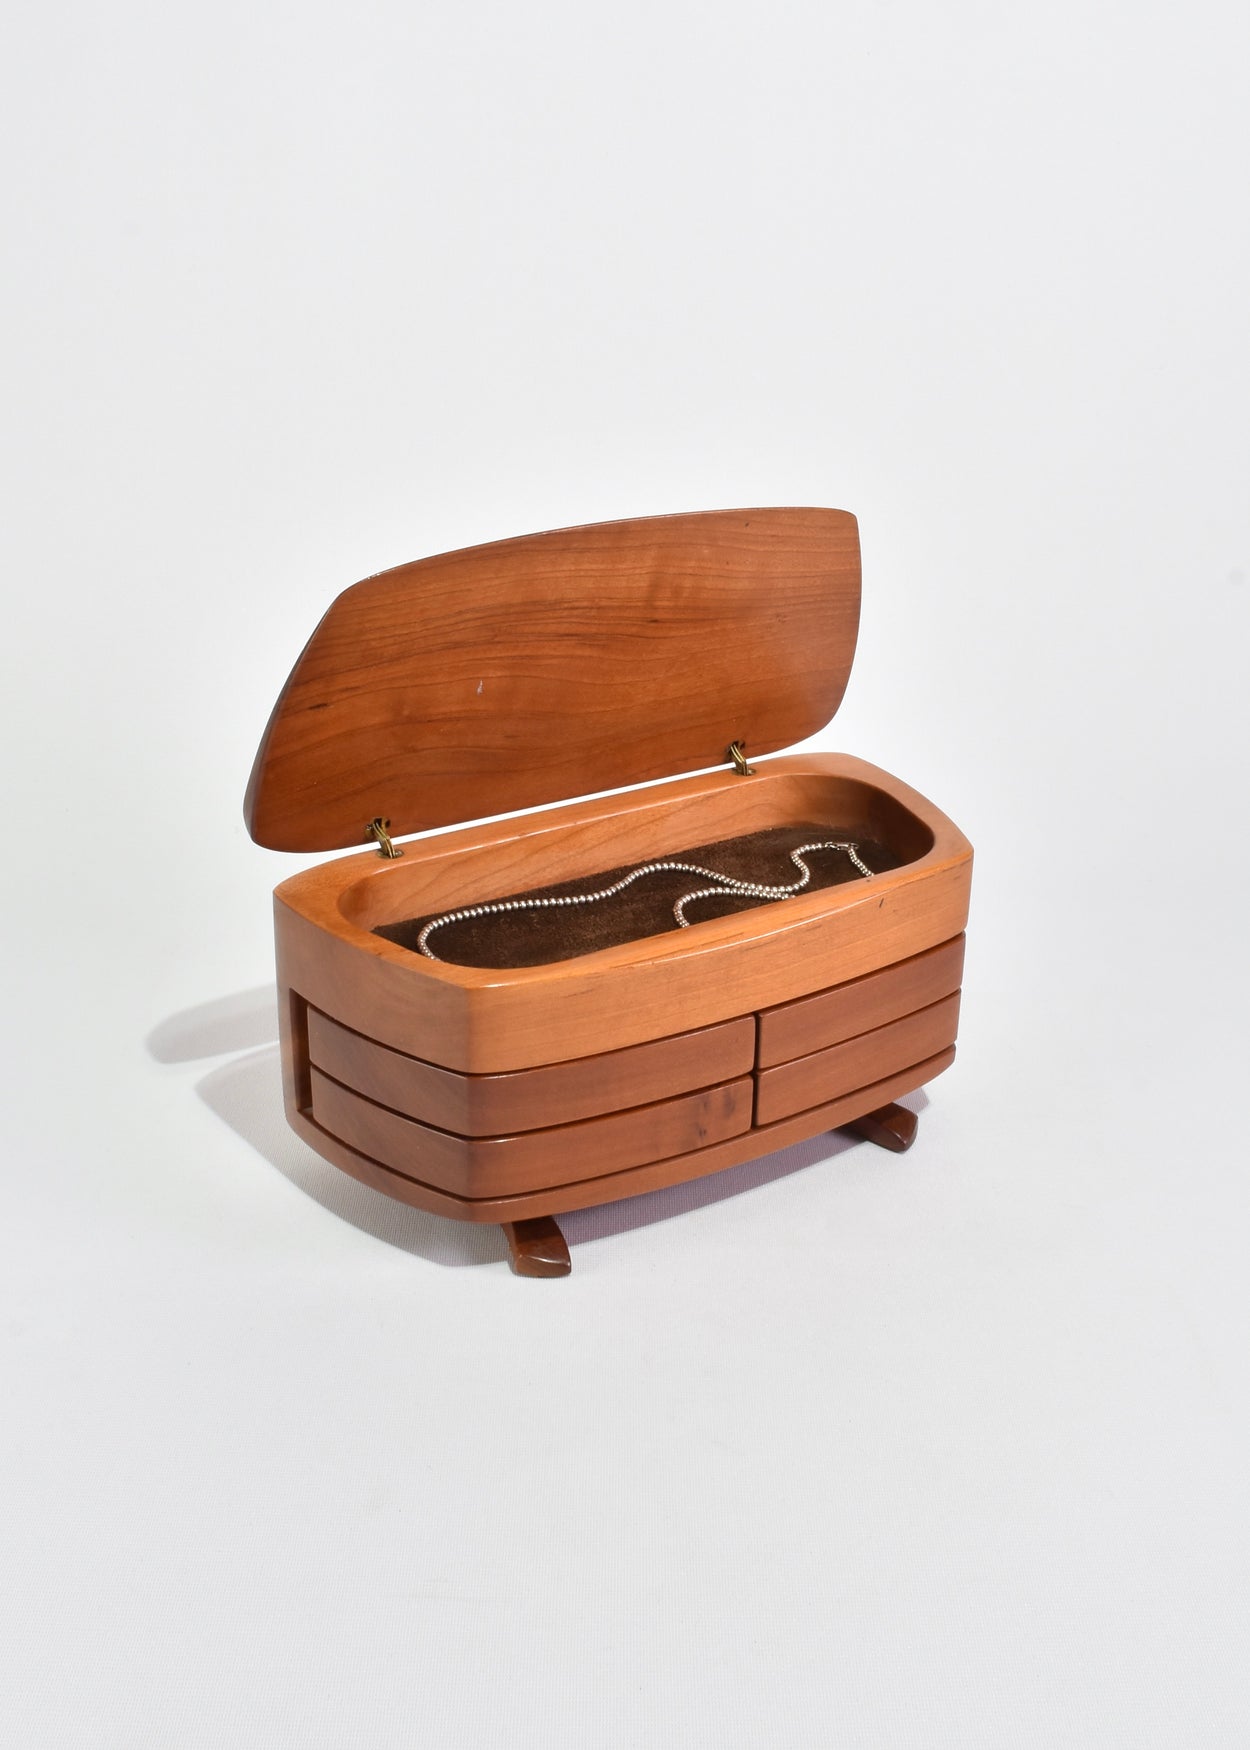 Pivoting Wooden Jewelry Box